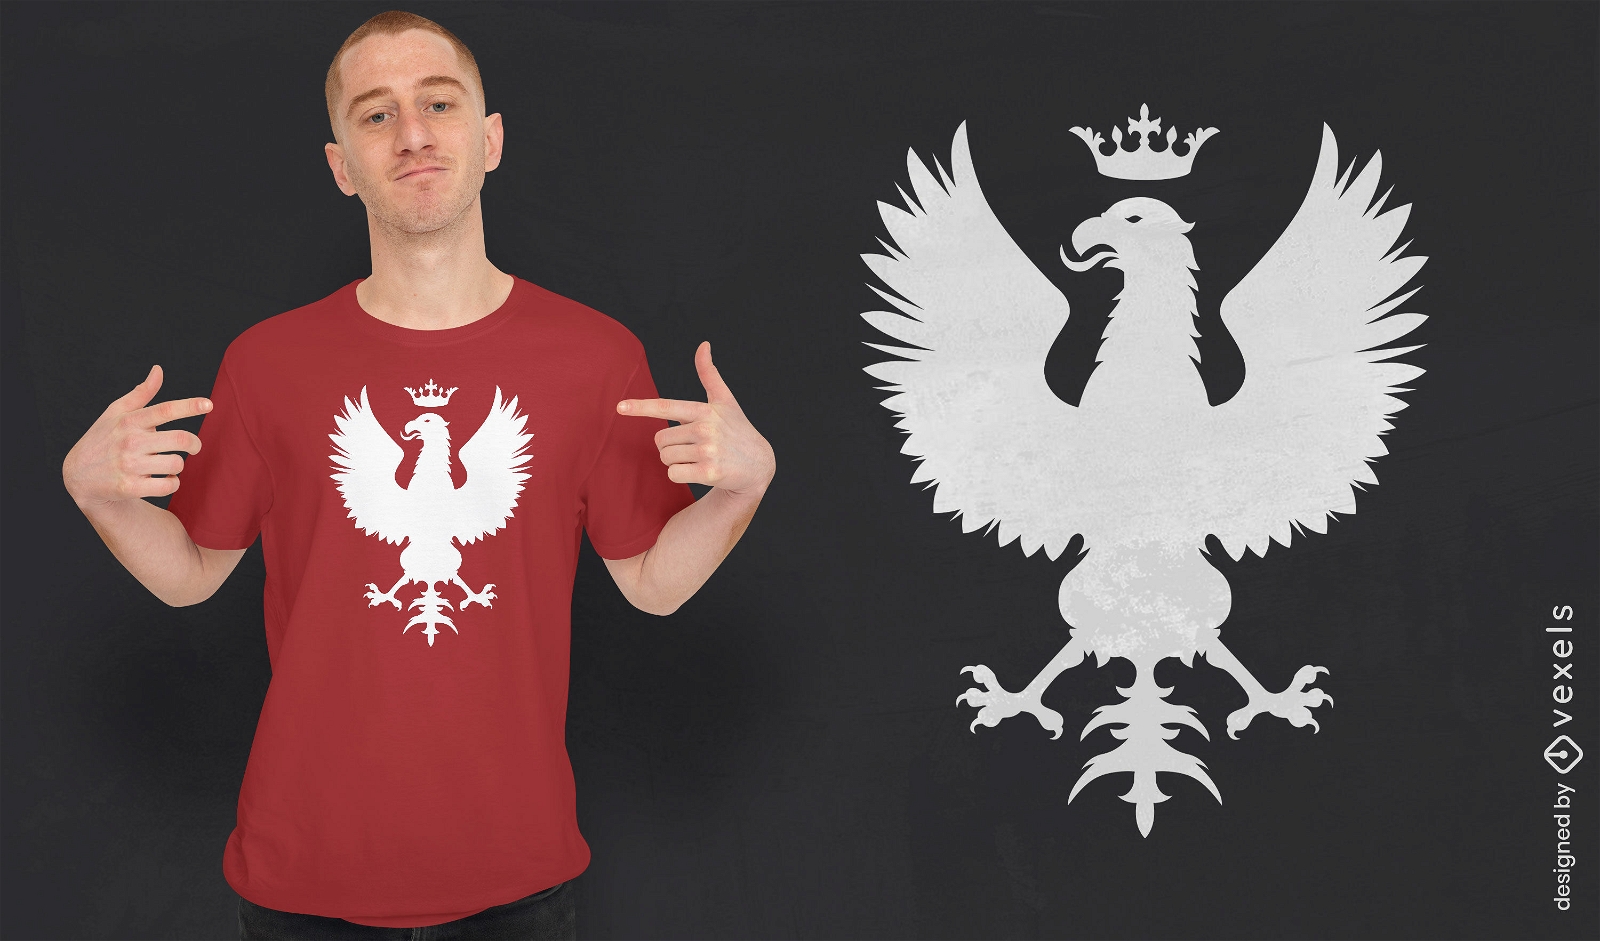 Diseño de camiseta con escudo de armas polaco.